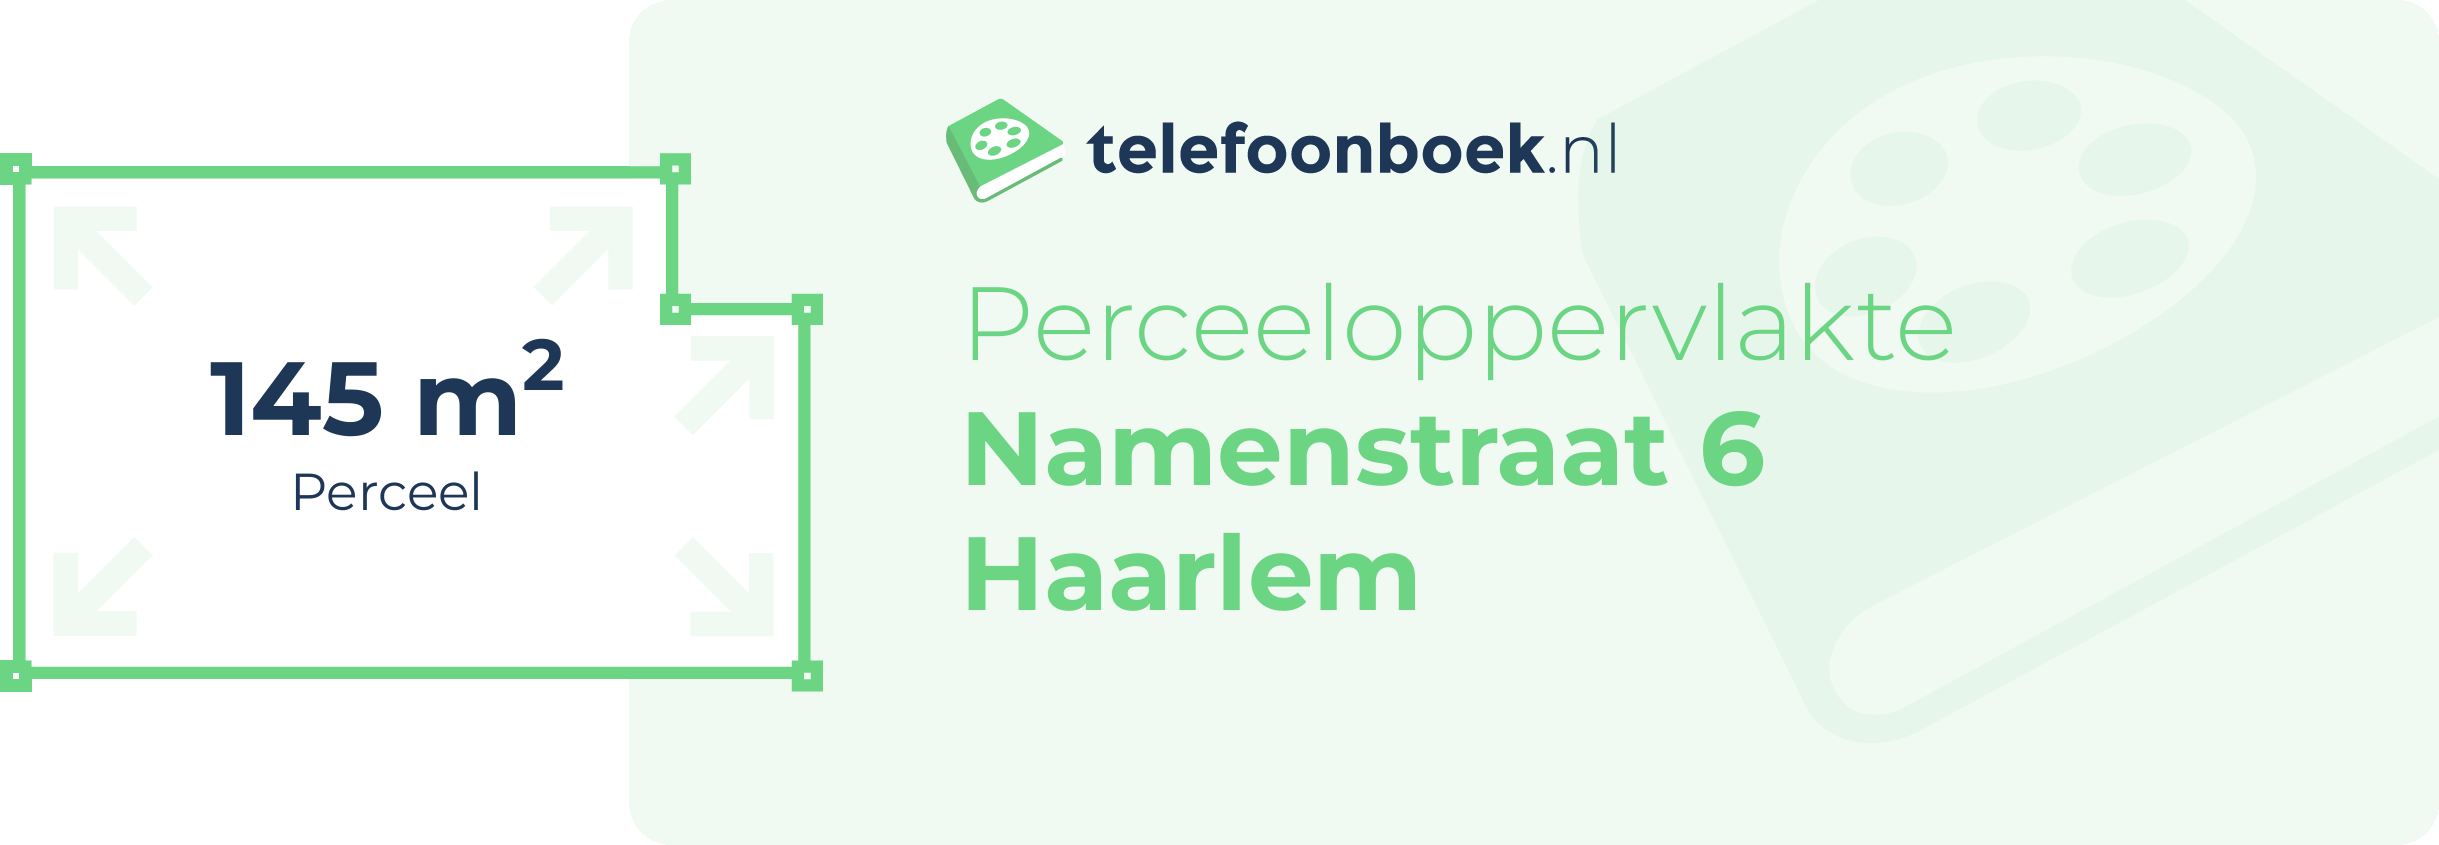 Perceeloppervlakte Namenstraat 6 Haarlem